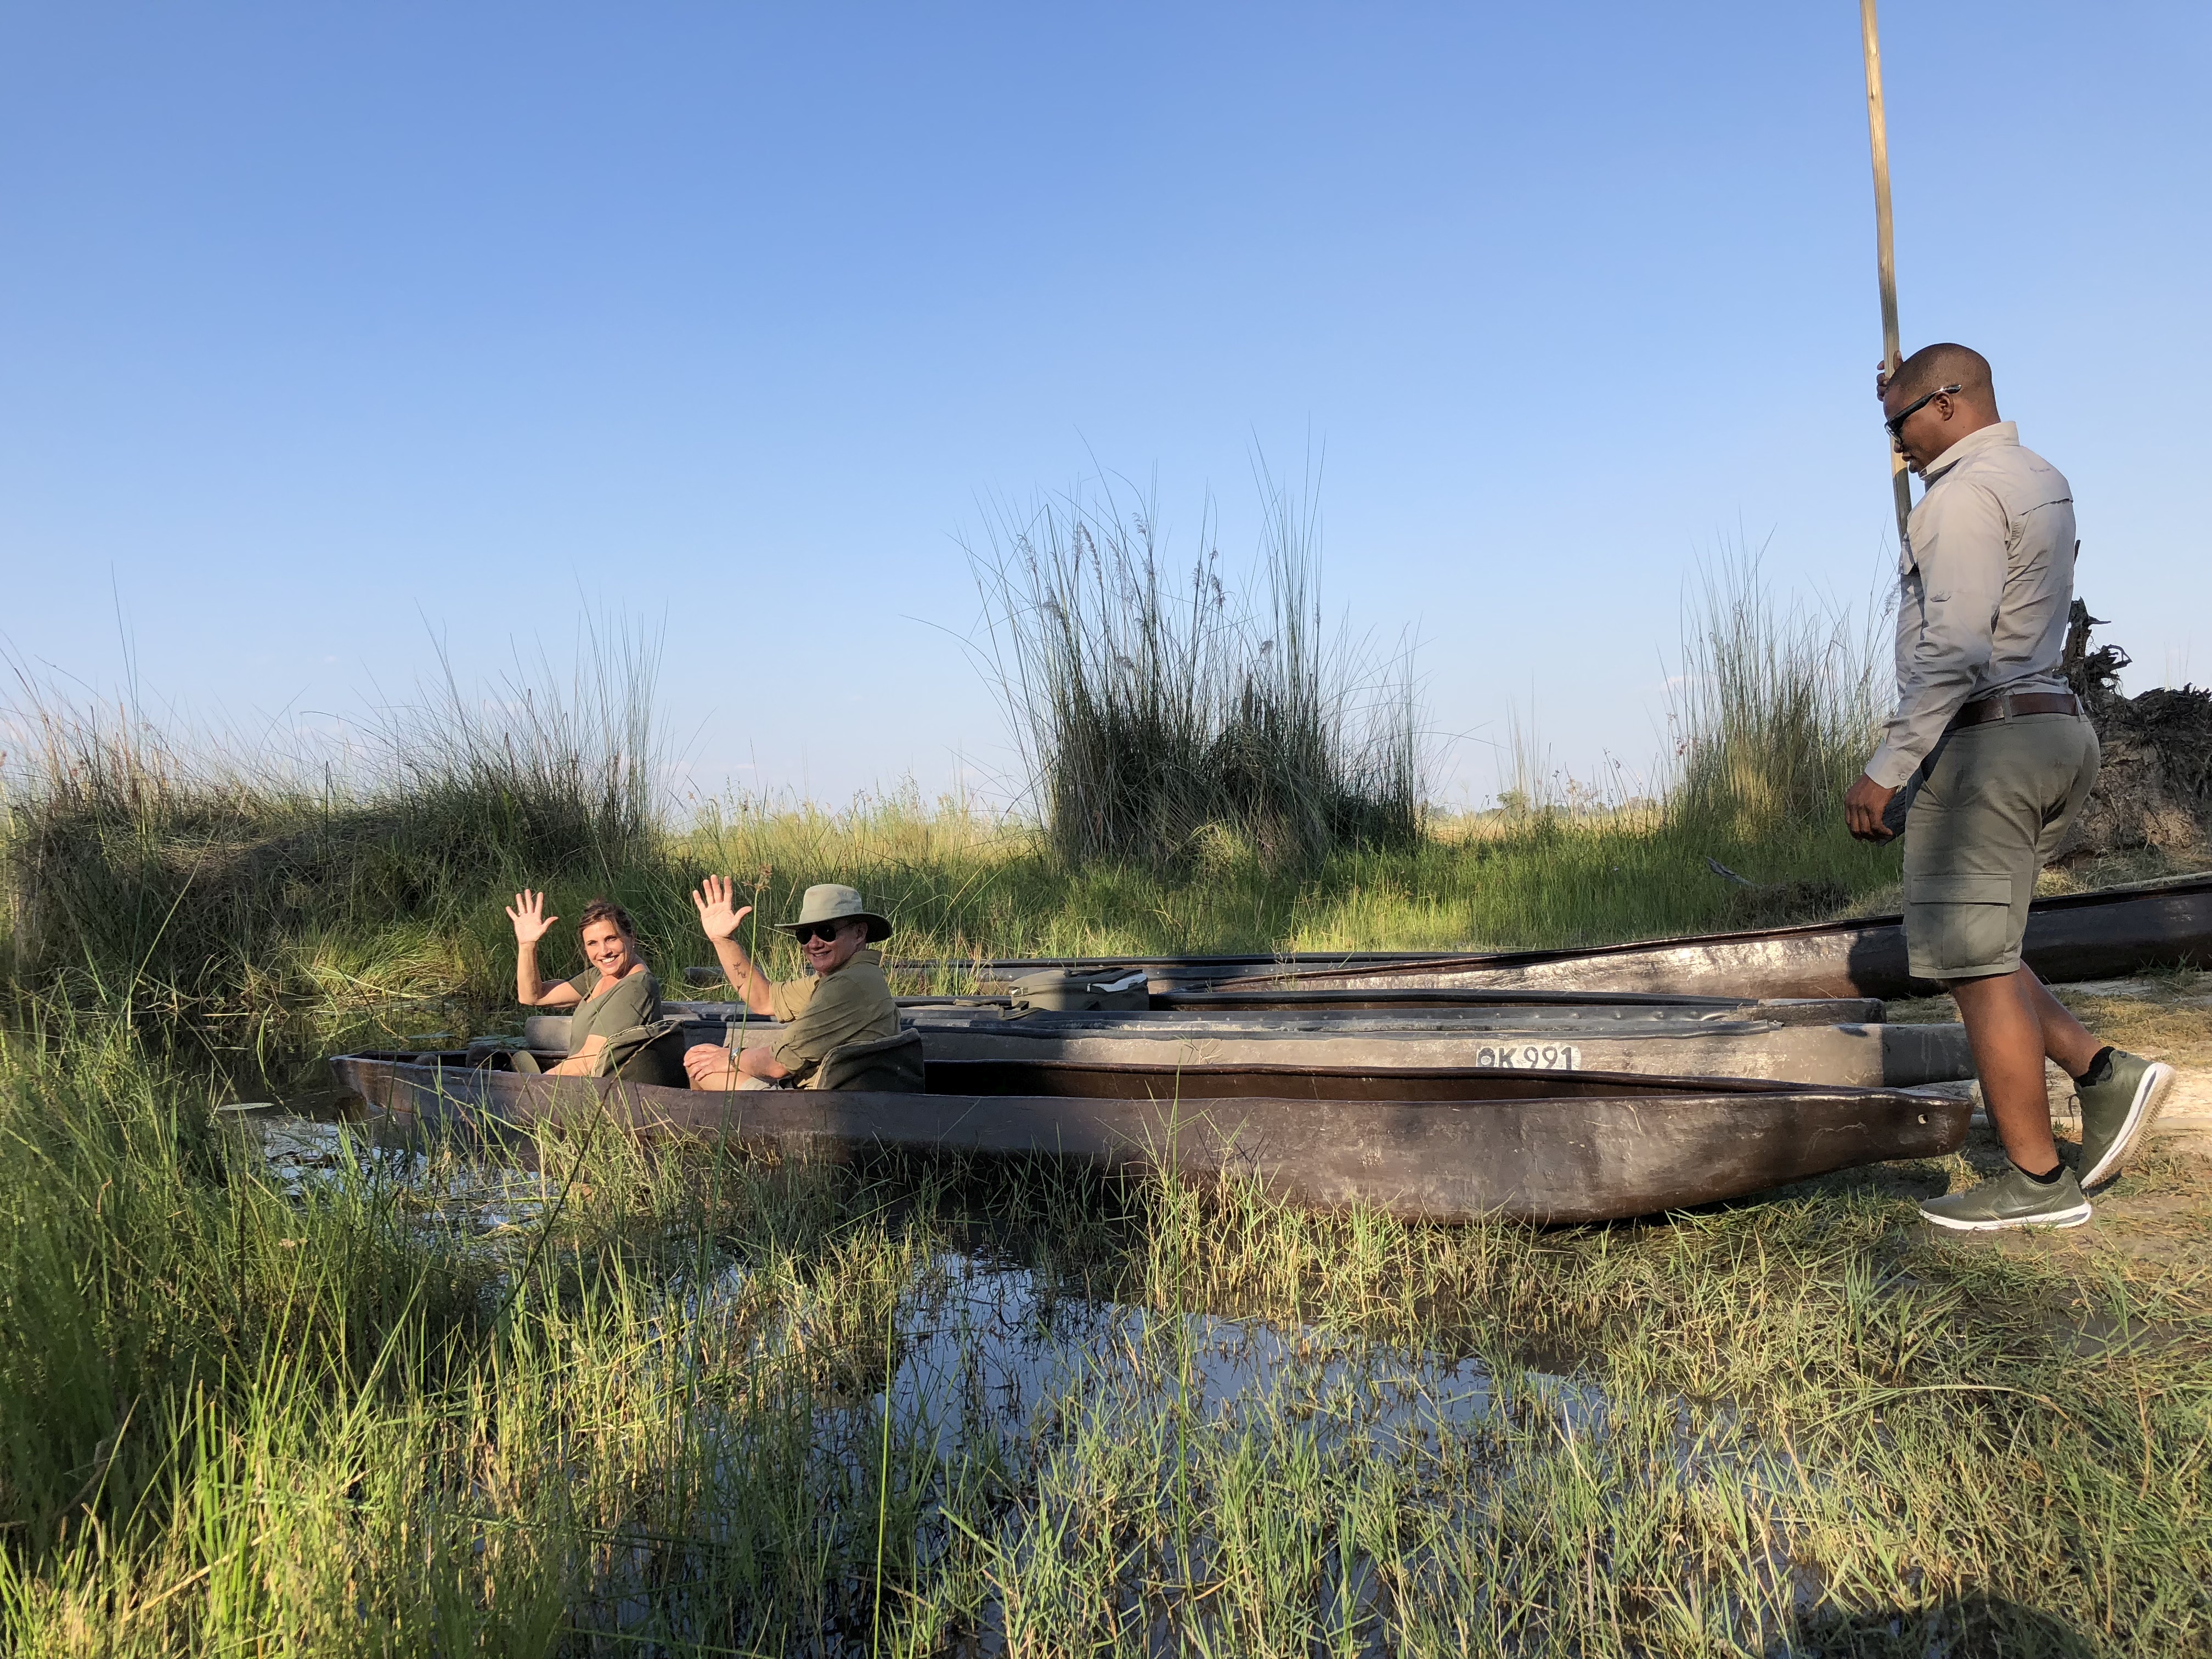 Mokoro boat in Botswana